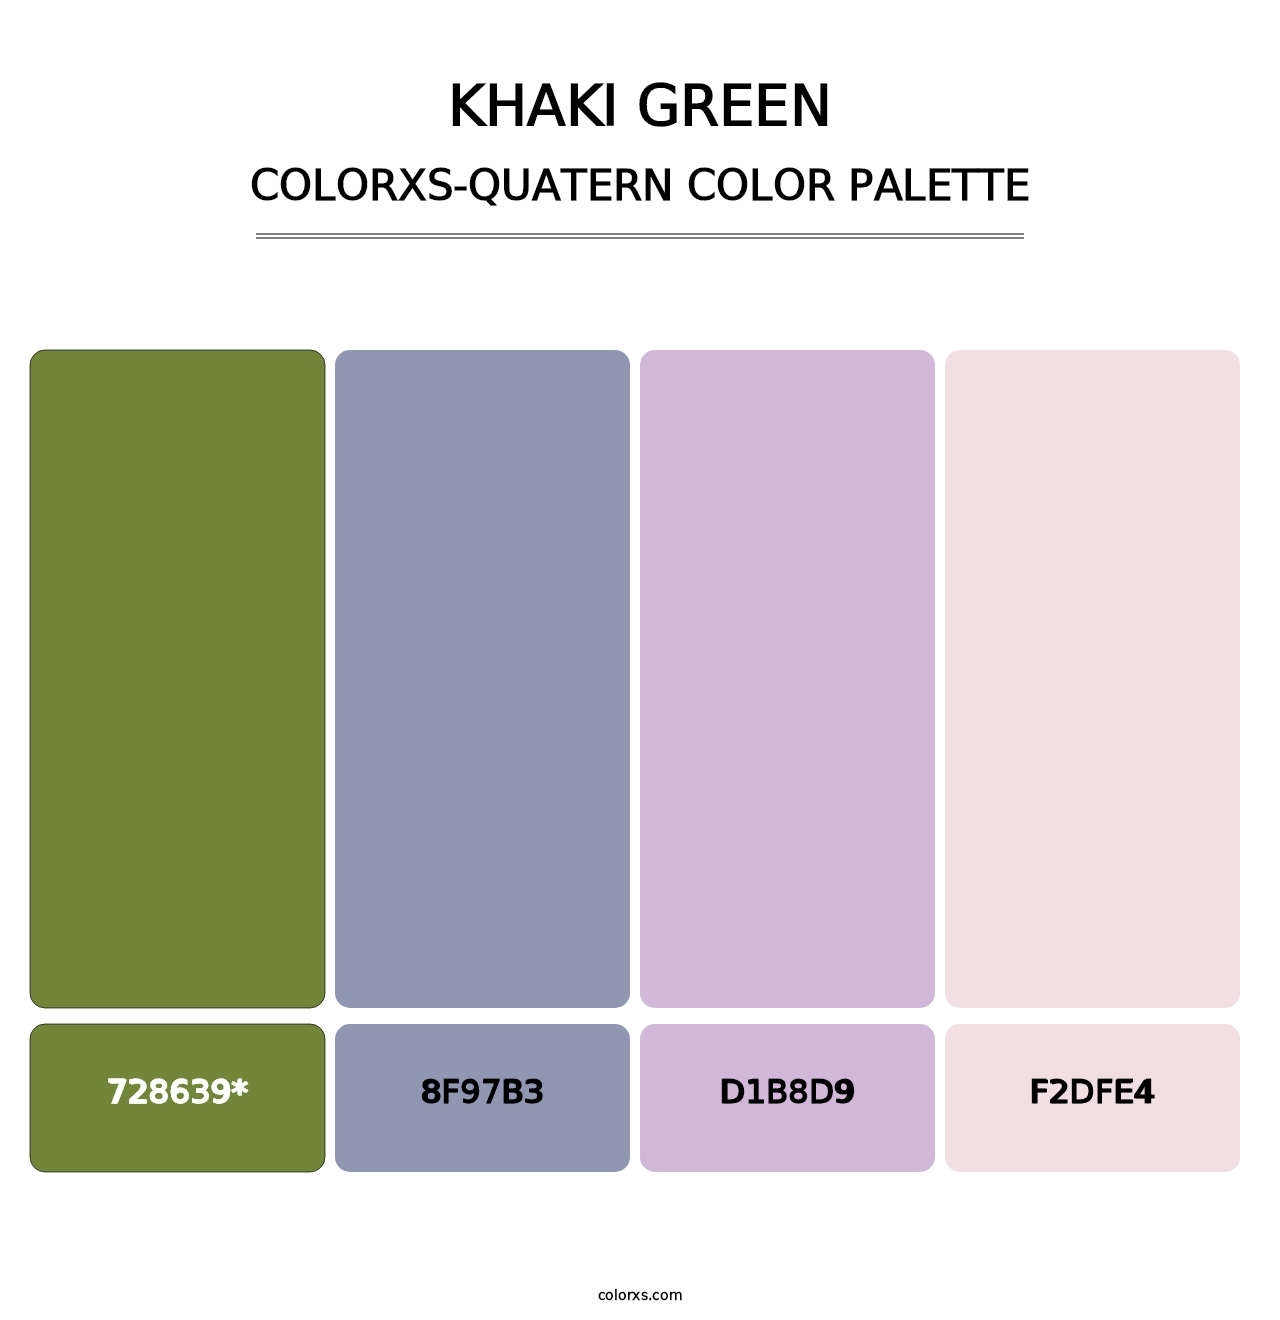 Khaki Green - Colorxs Quatern Palette